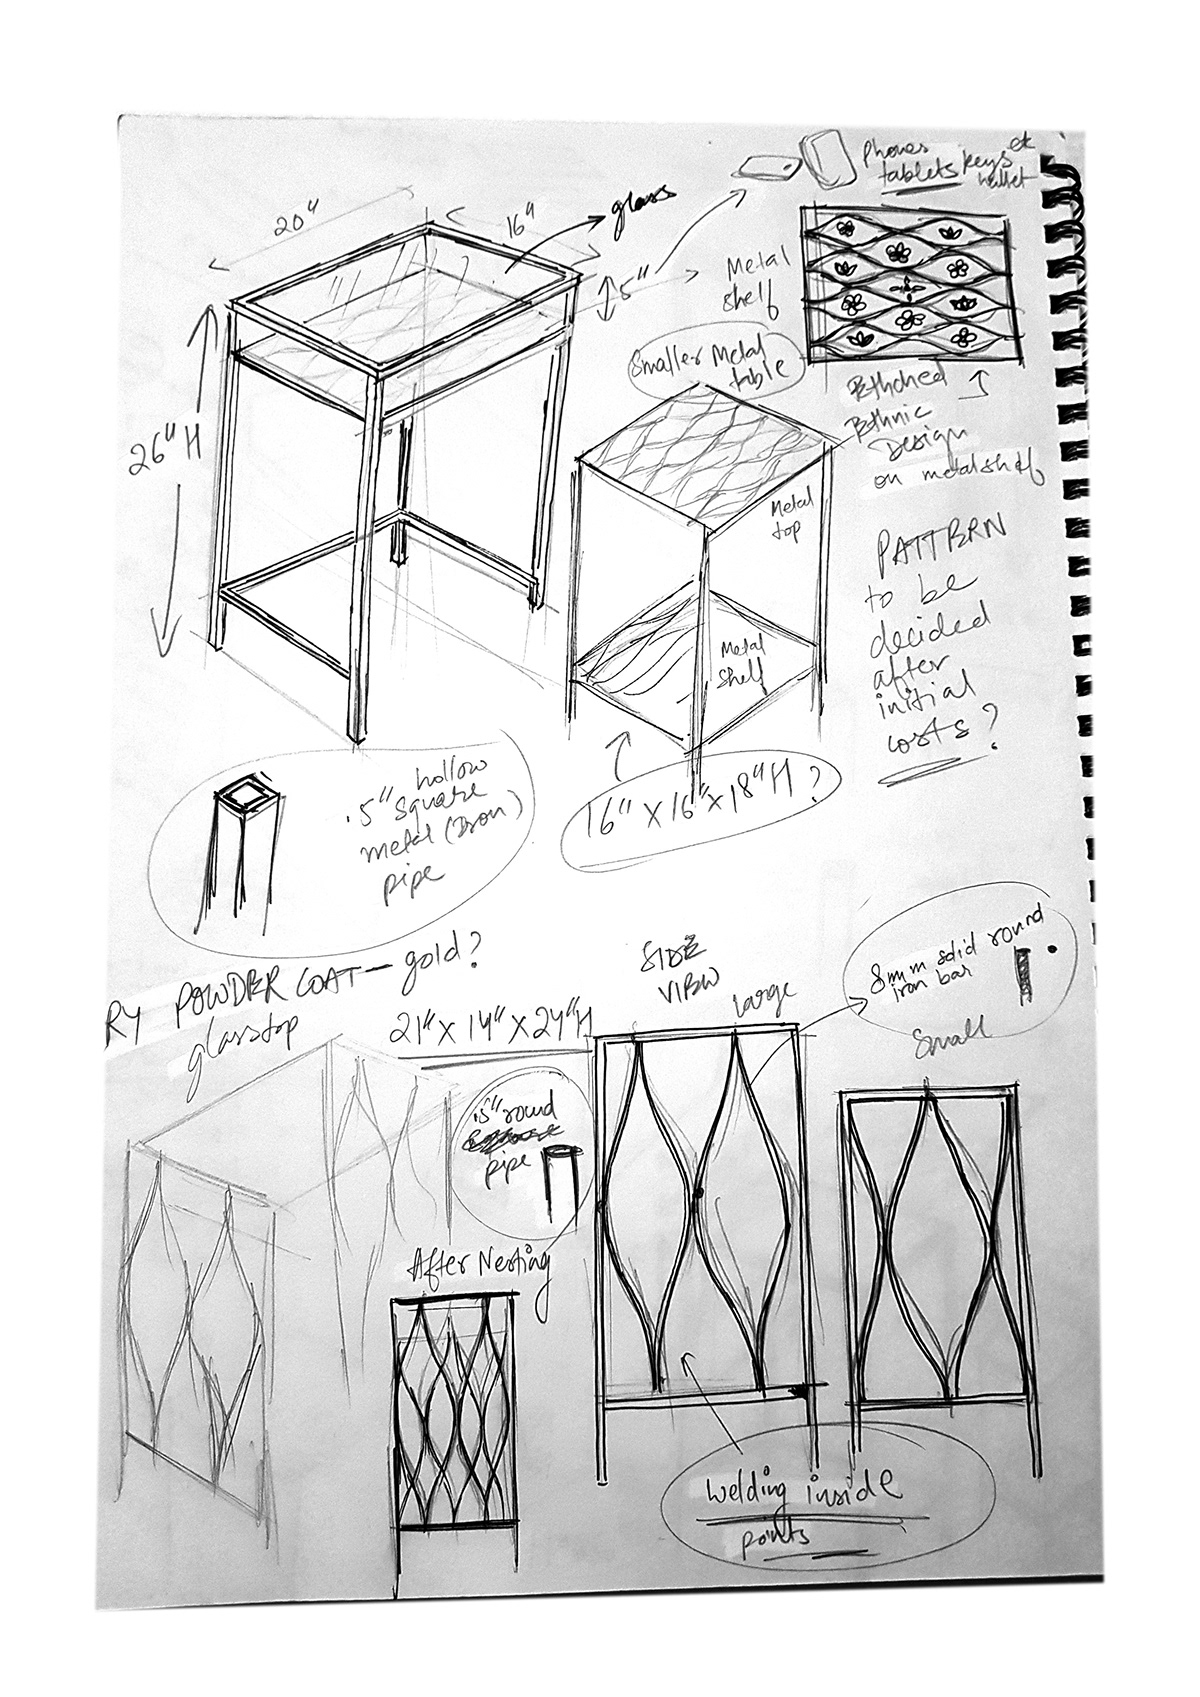 furniture design  industrial design  product design 